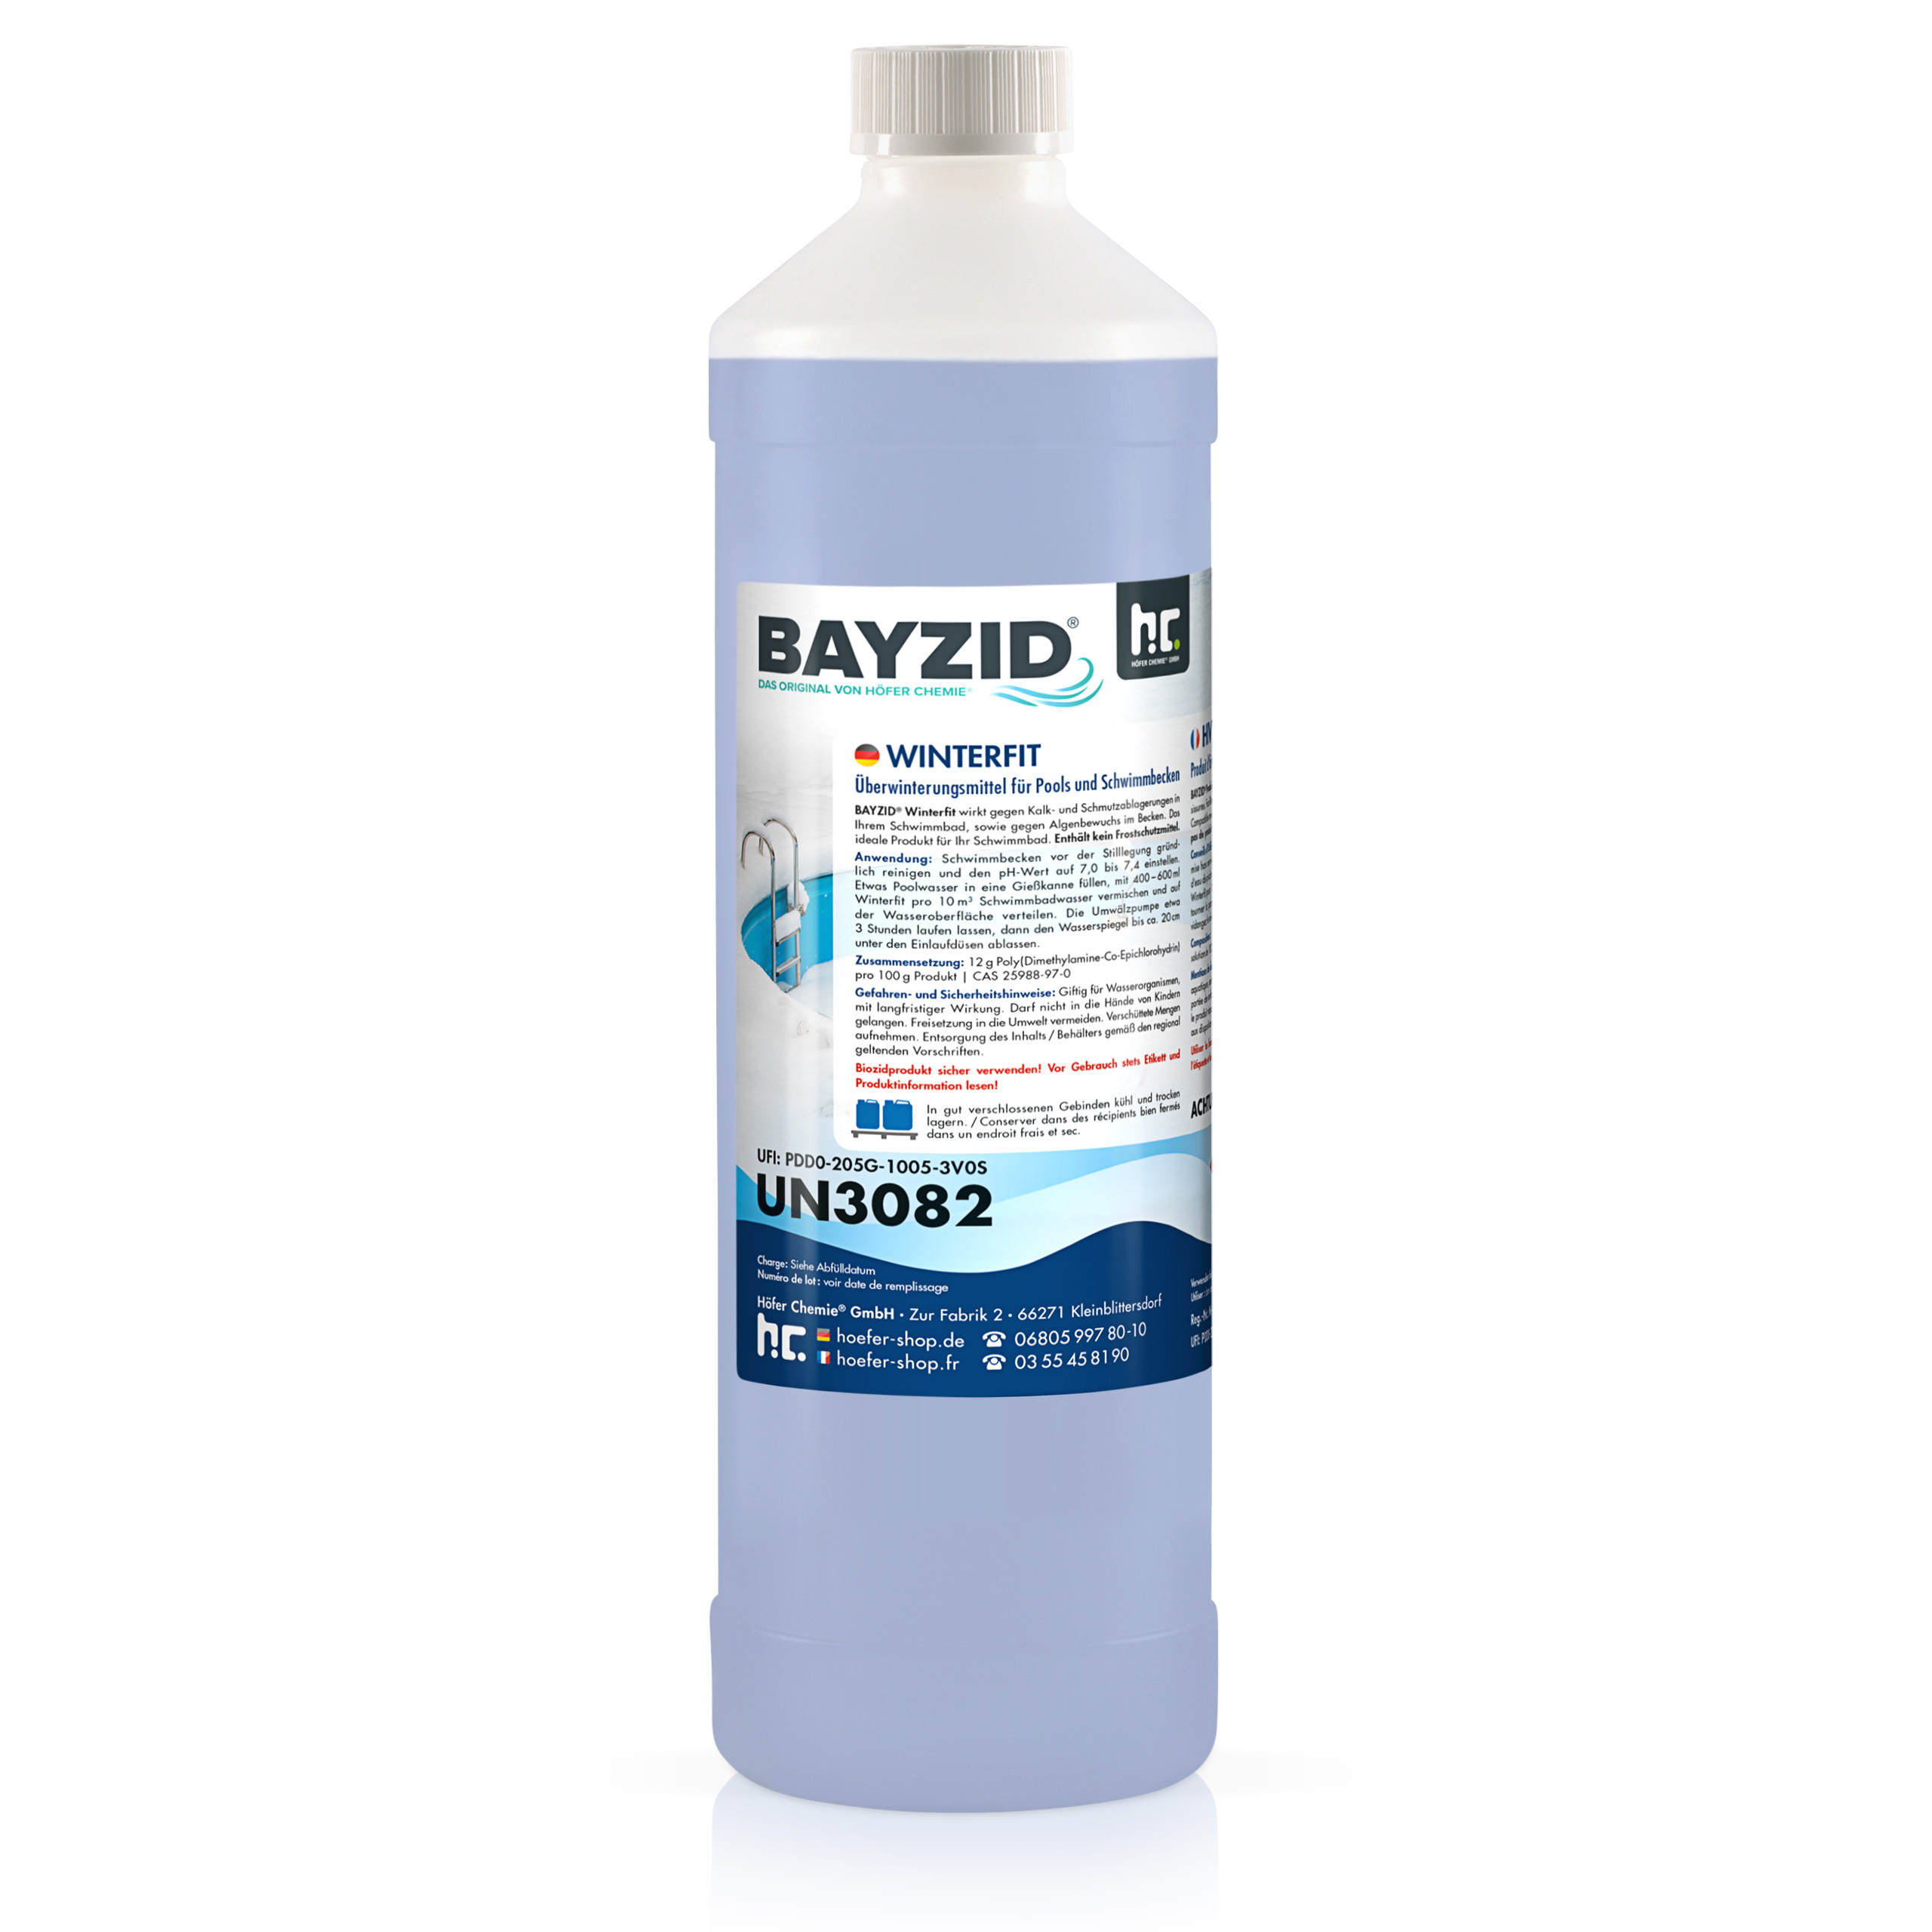 1 L BAYZID® Winterfit produit d'hivernage pour piscines